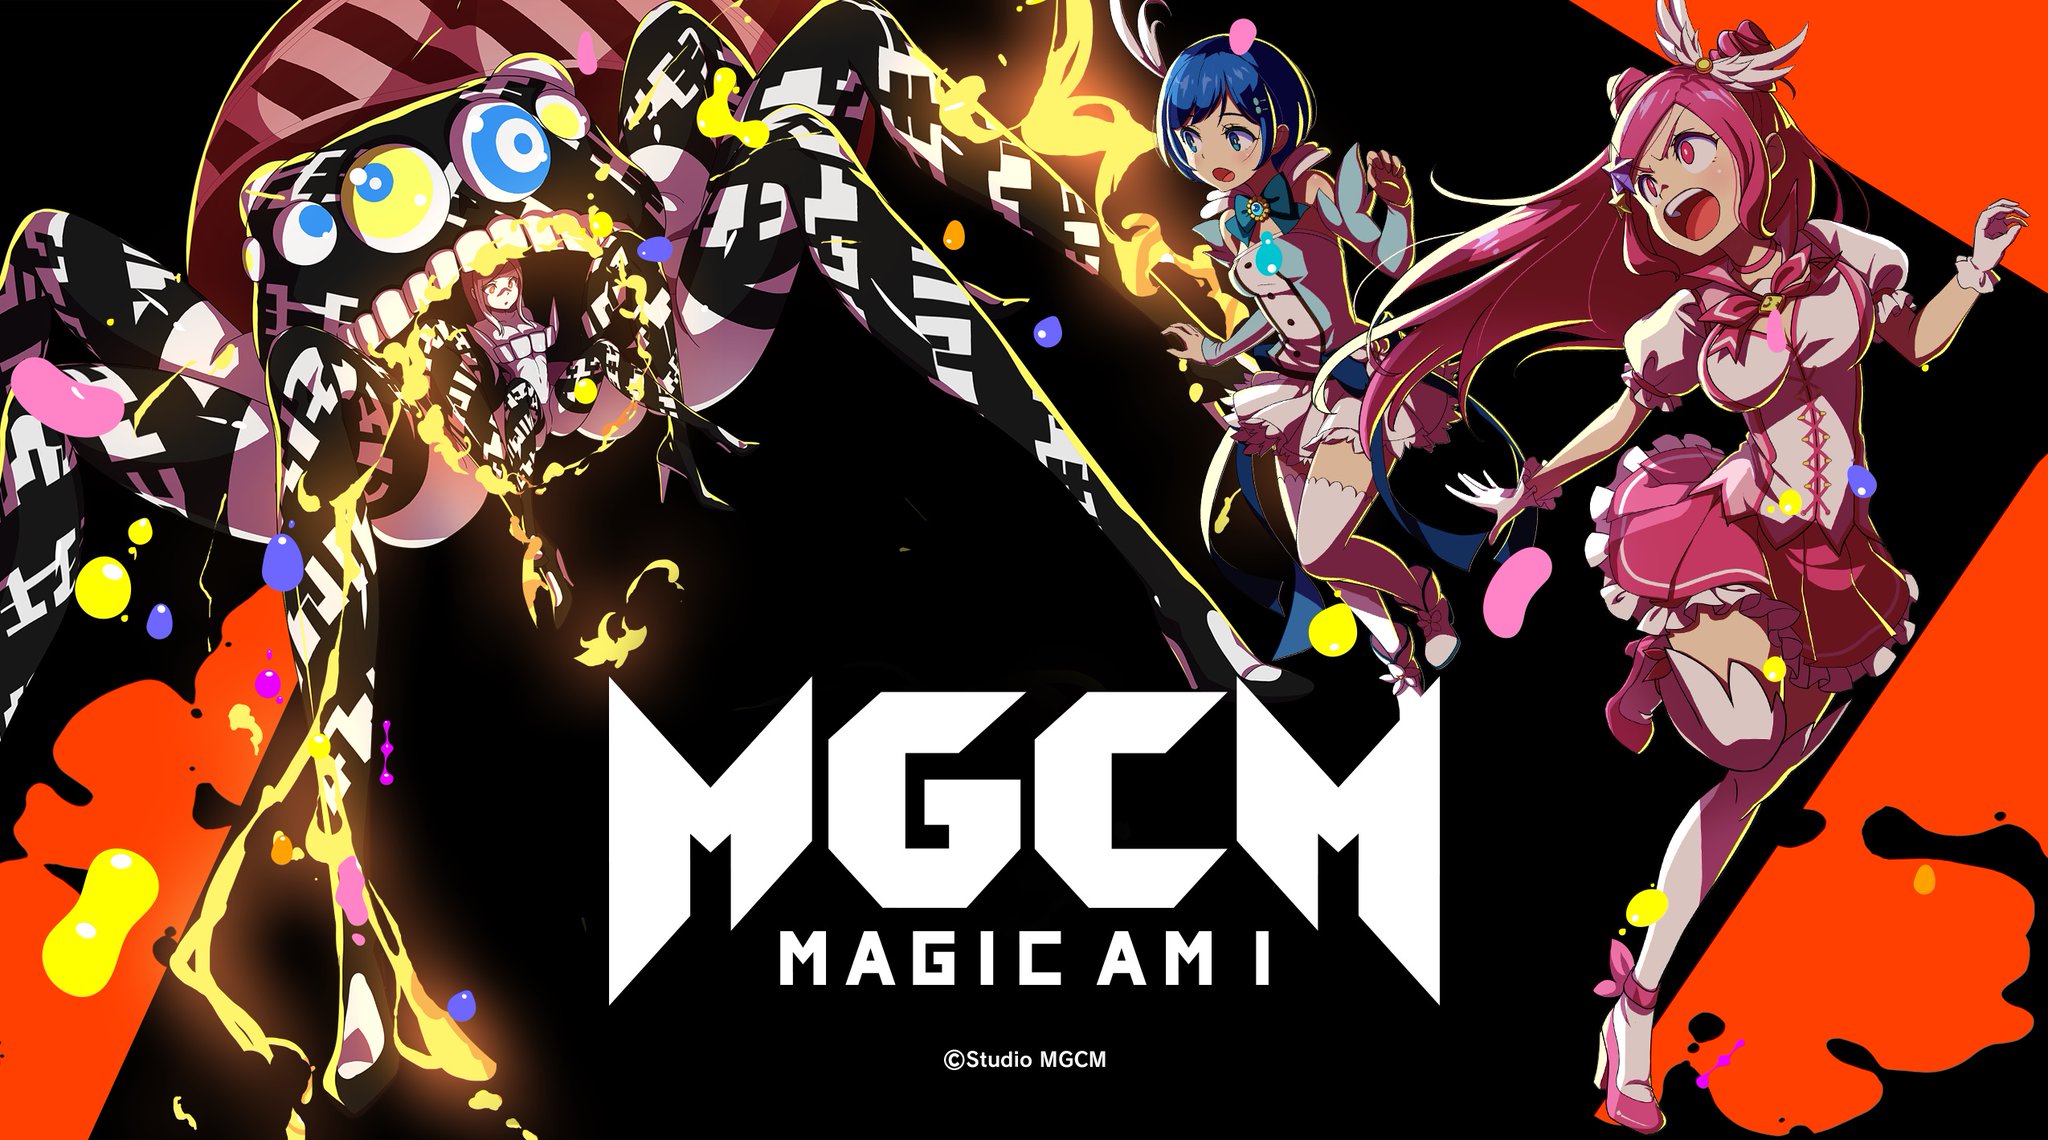 DMM網頁遊戲《 MagiCami 》提出「童貞證明」有機會獲得60年份轉蛋獎勵 - 電腦王阿達